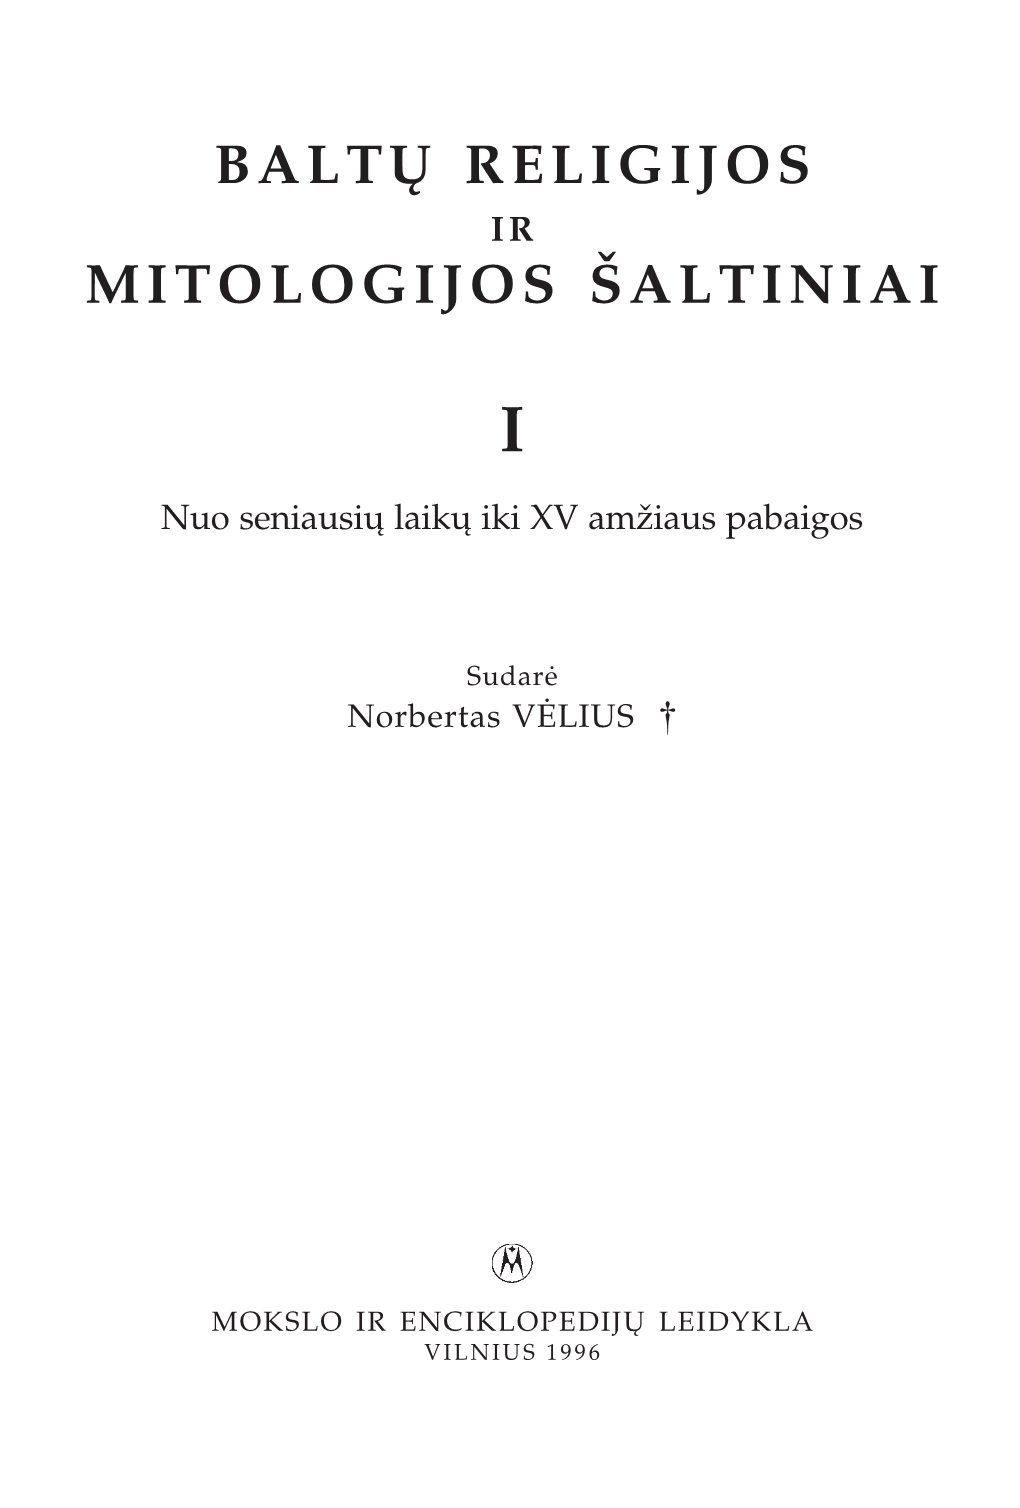 Baltų Religijos Mitologijos Šaltiniai